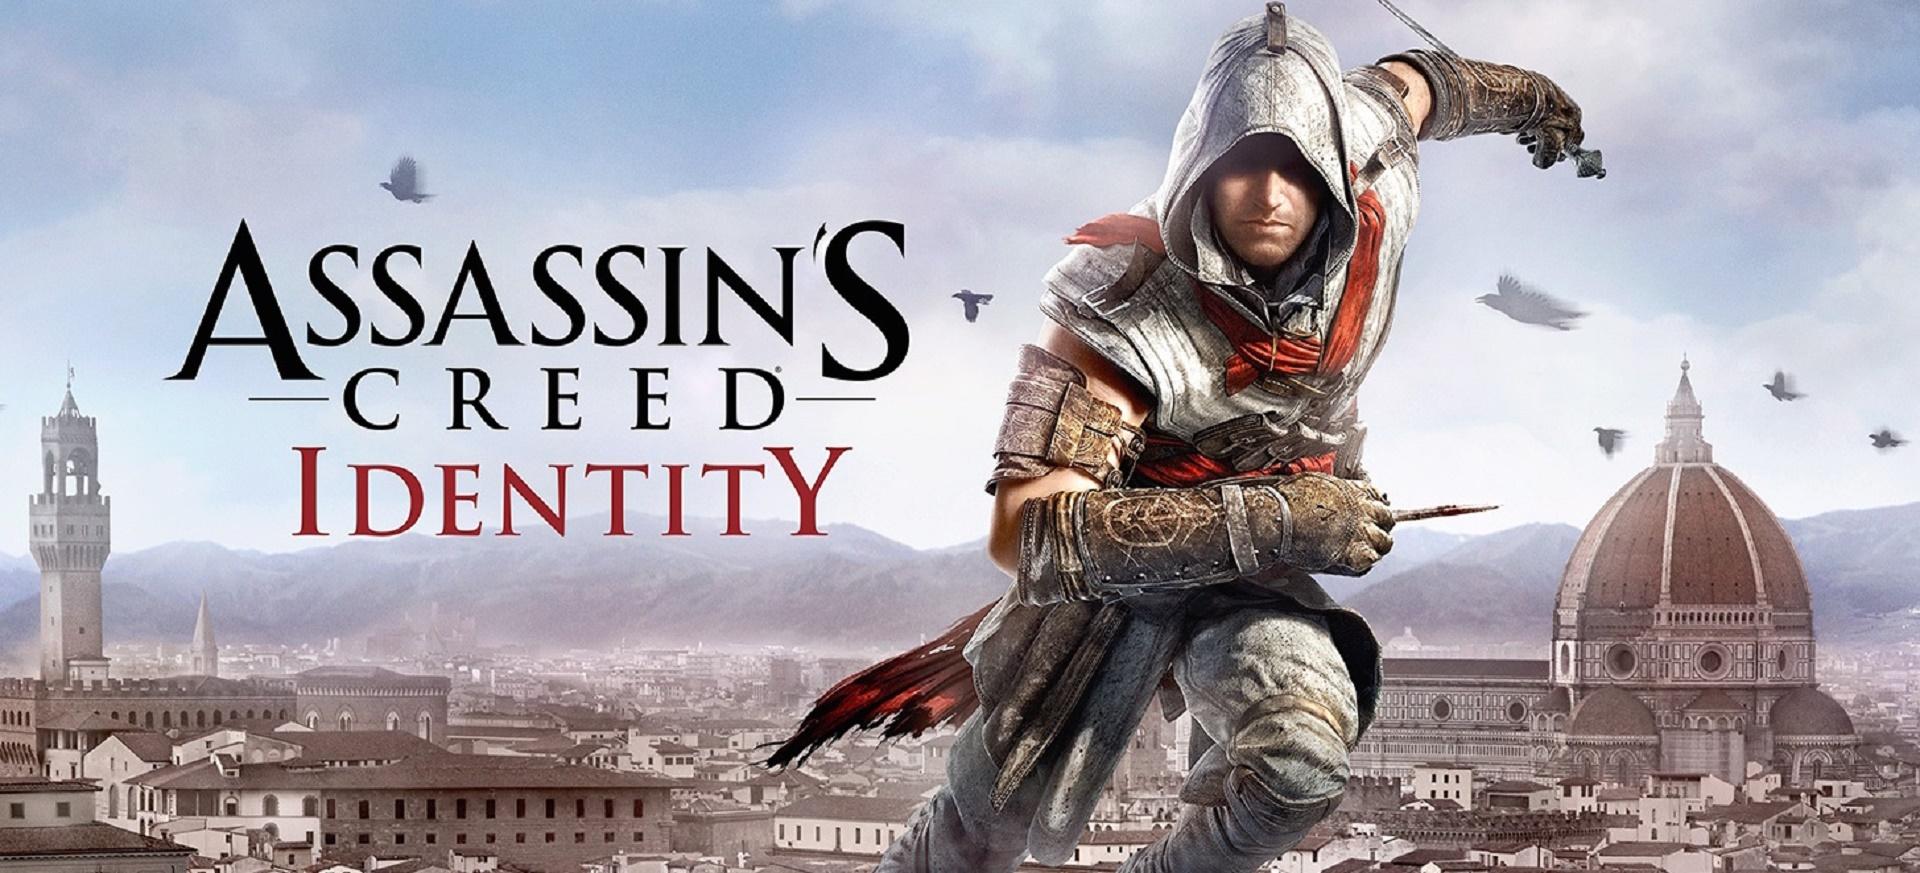 Assassin’s Creed Identity chính thức được công bố cho iOS - Tin Game